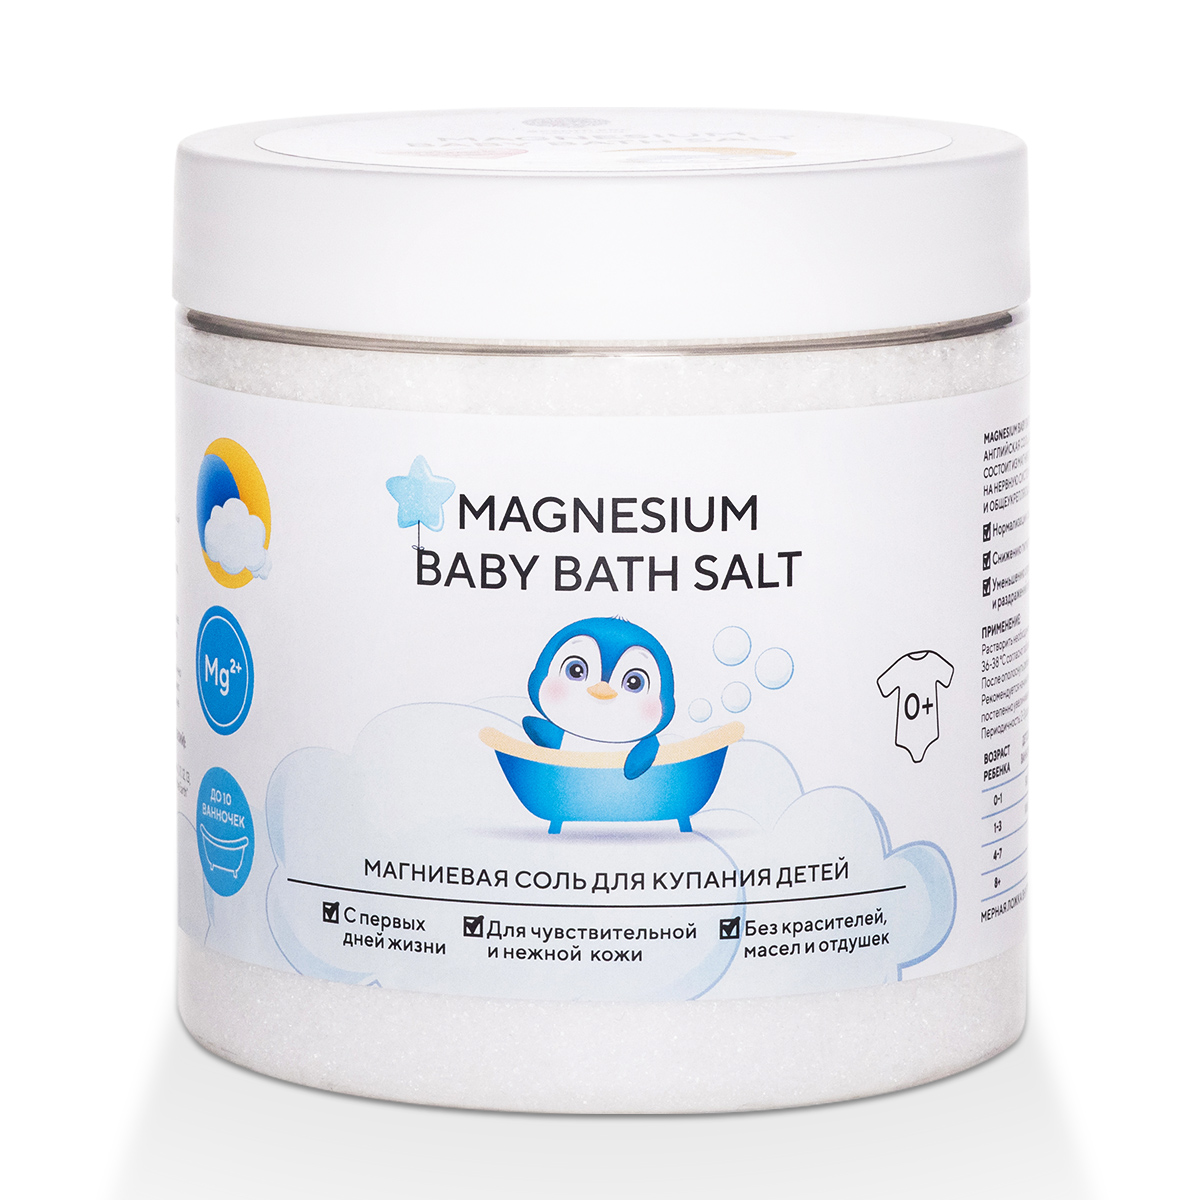 Соль магниевая Magnesium Baby Bath Salt для купания детей 500 г соль магниевая для ванн сольздрав английская 800 г